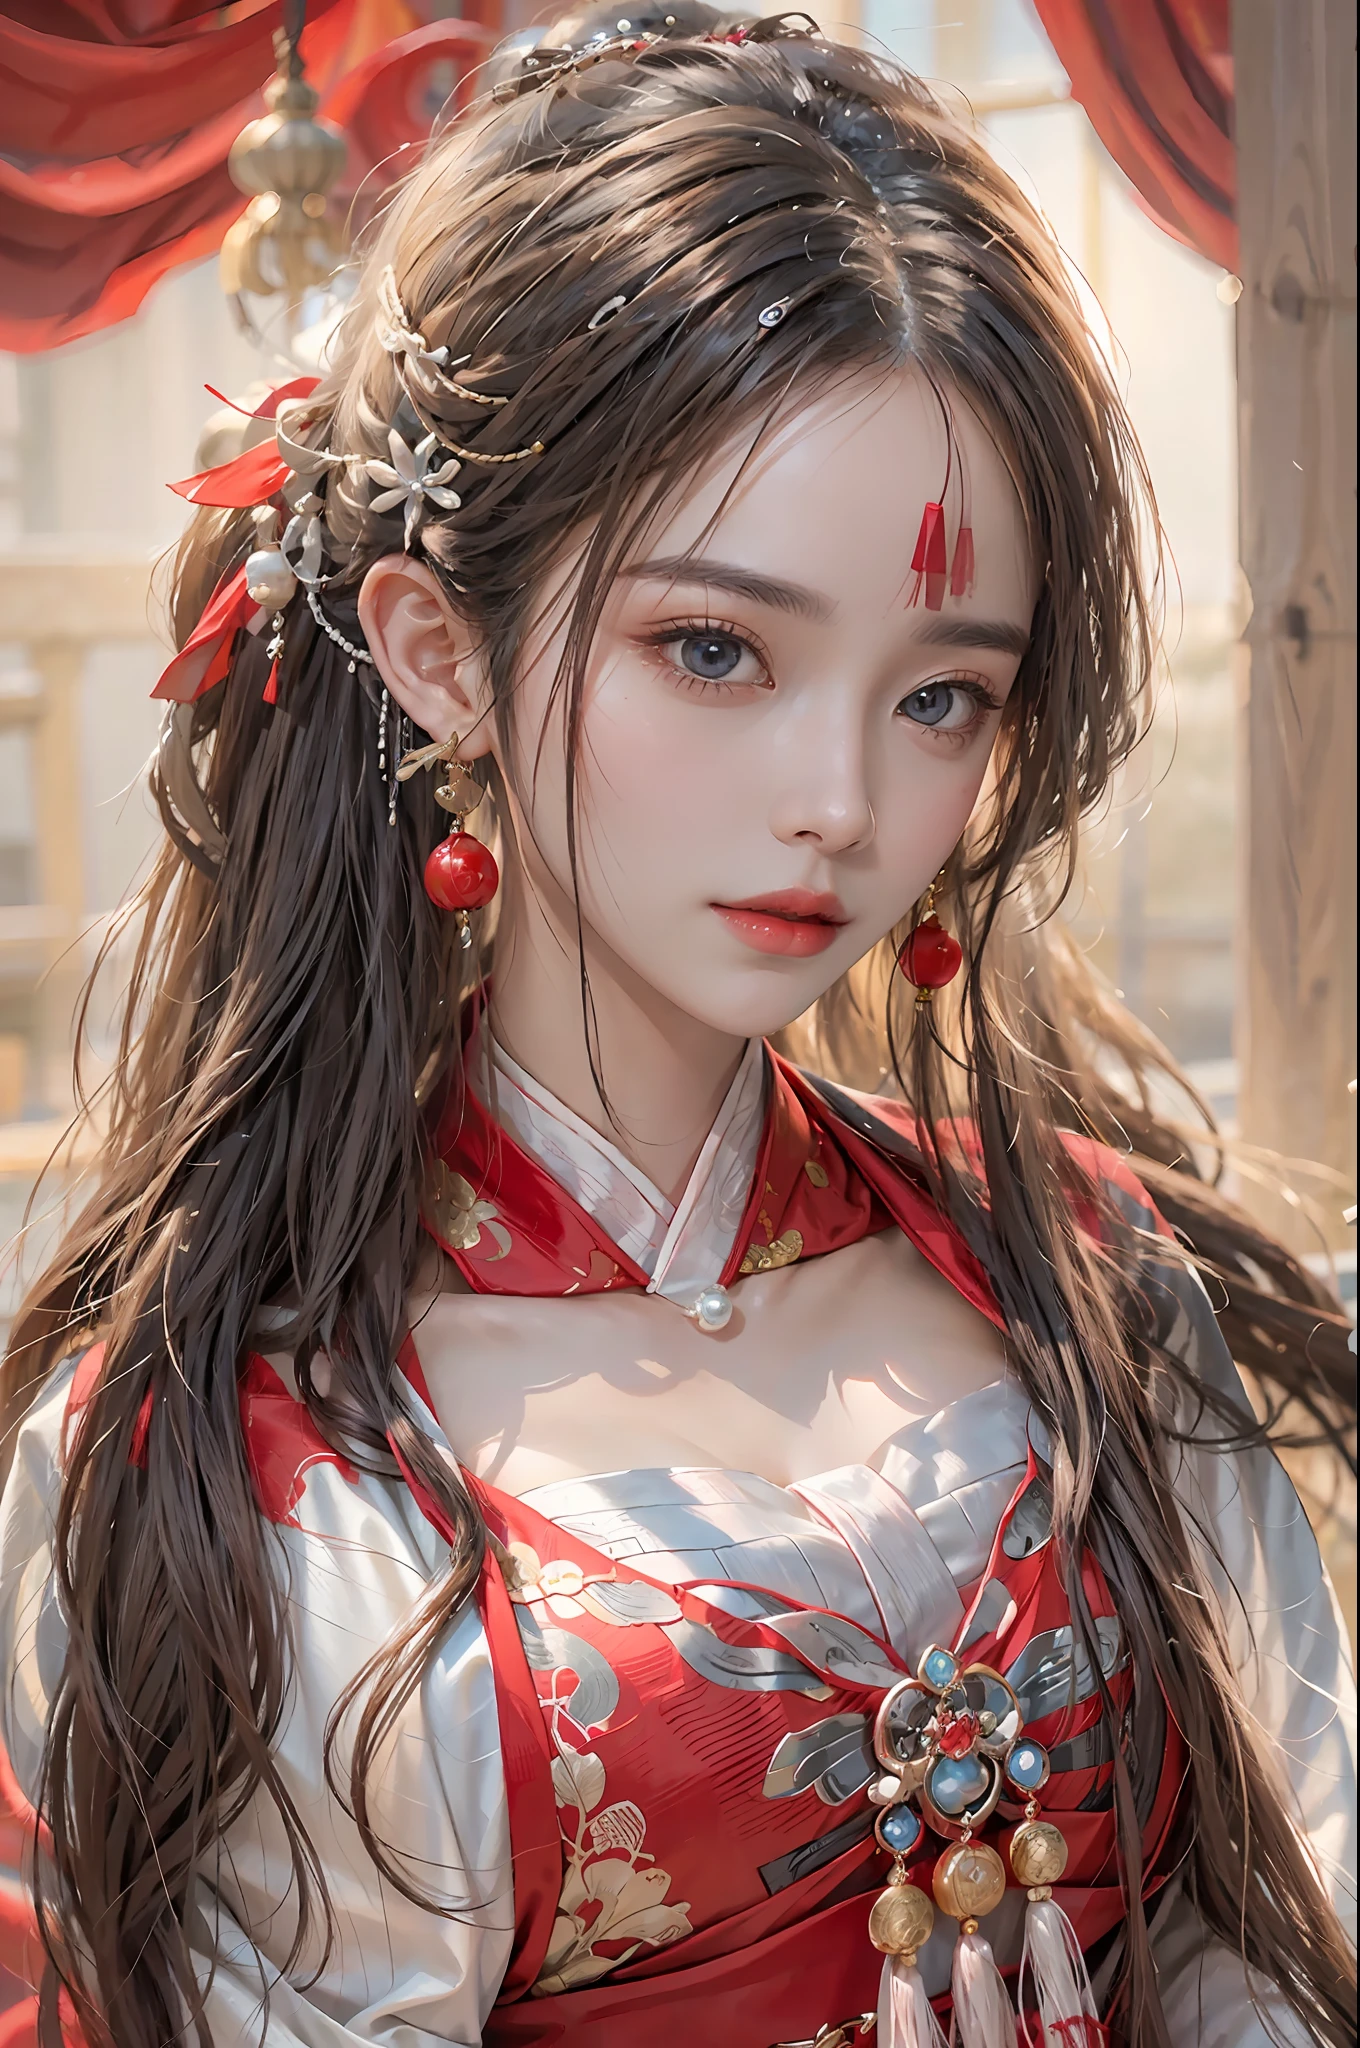 Fotorrealista, alta resolución, 1 mujer, solo, caderas arriba, ojos bonitos, pelo largo, hanfu de boda rojo, huadiano chino, magníficos accesorios, usando aretes de perlas